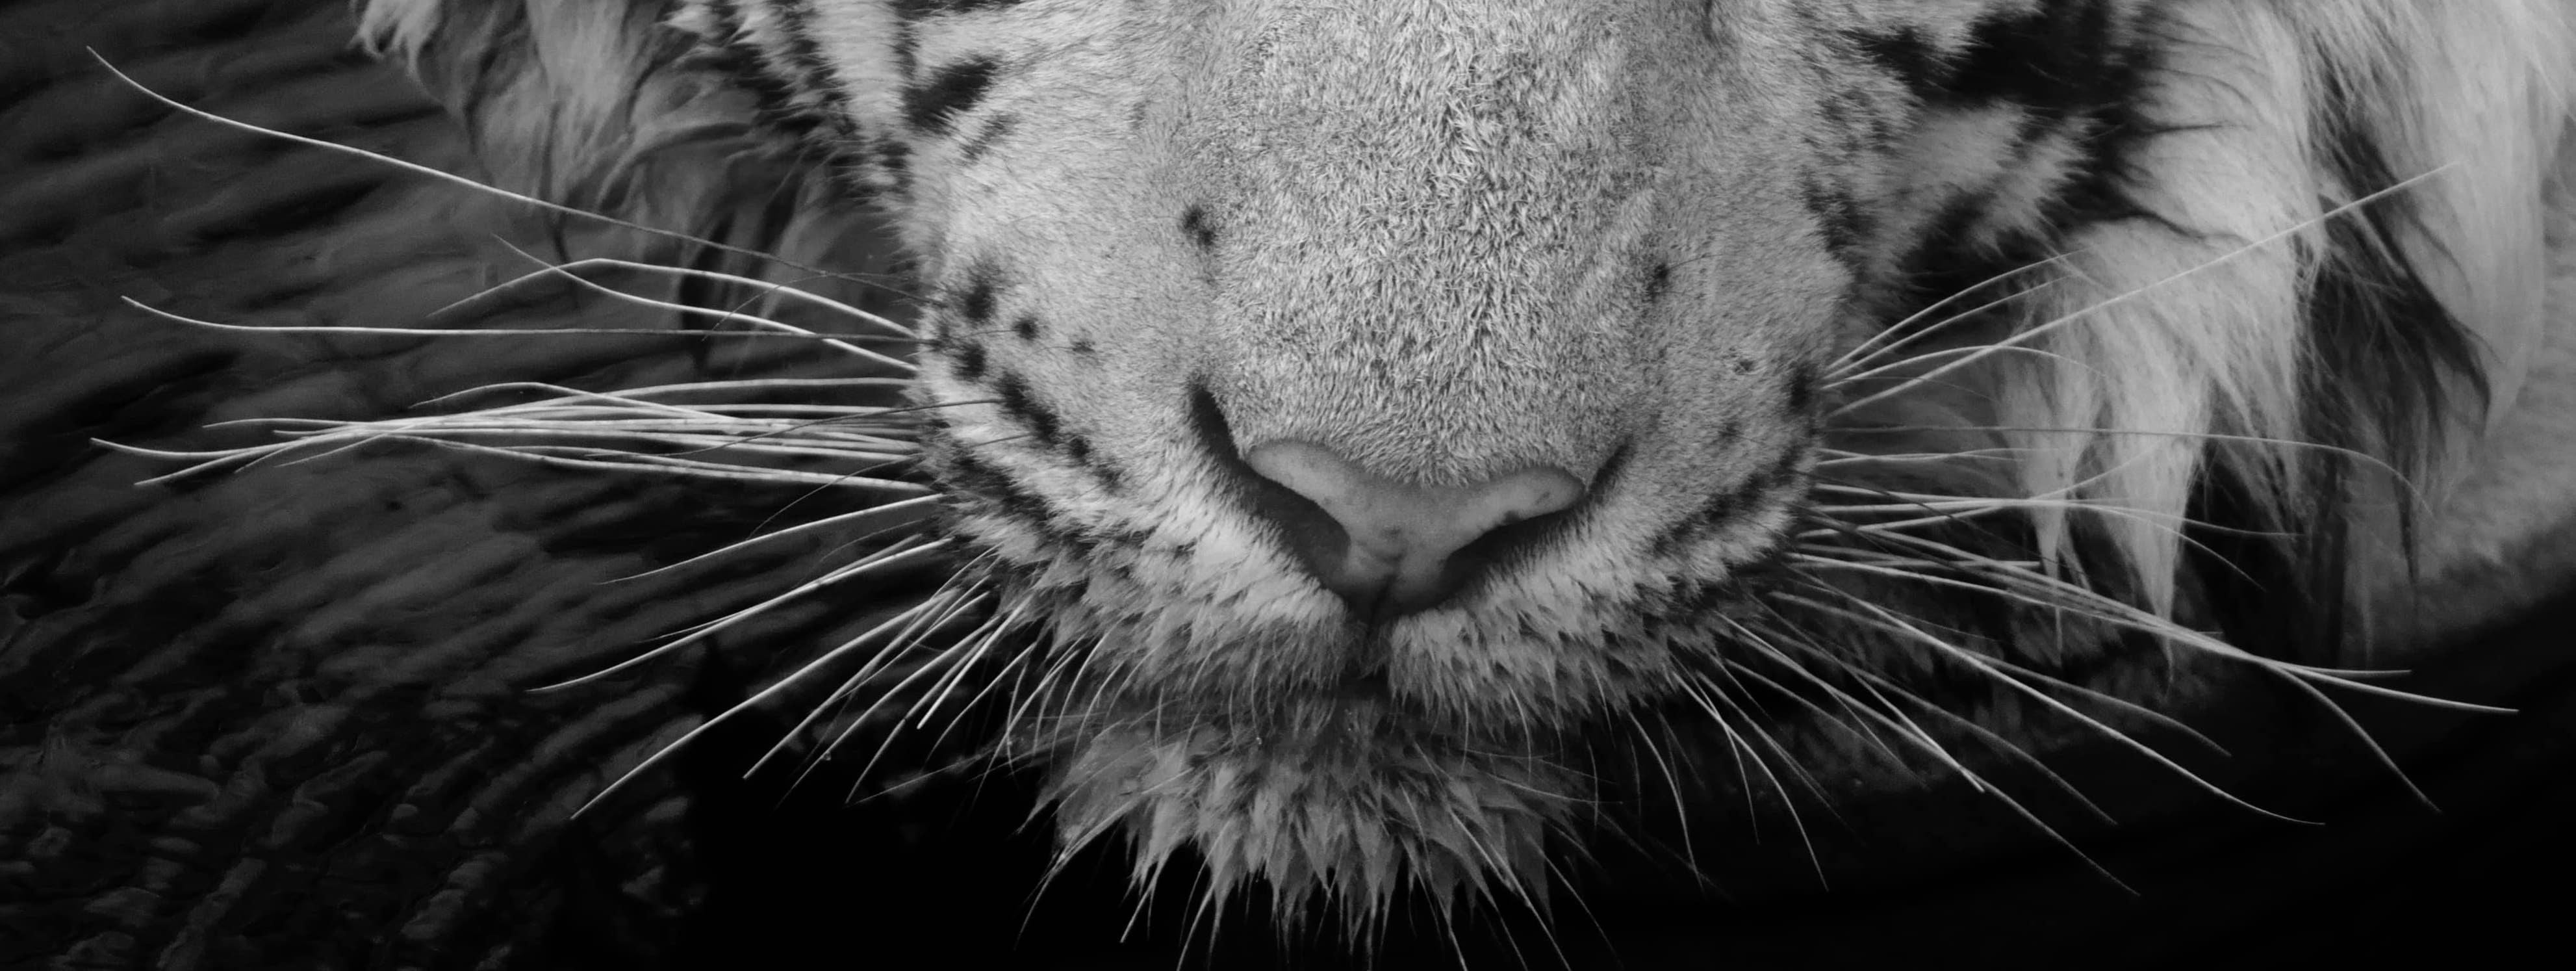 Landschaft Natur Tier Foto groß schwarz und weiß Tiger Wasser See Indien  (Schwarz), Black and White Photograph, von Aditya Dicky Singh